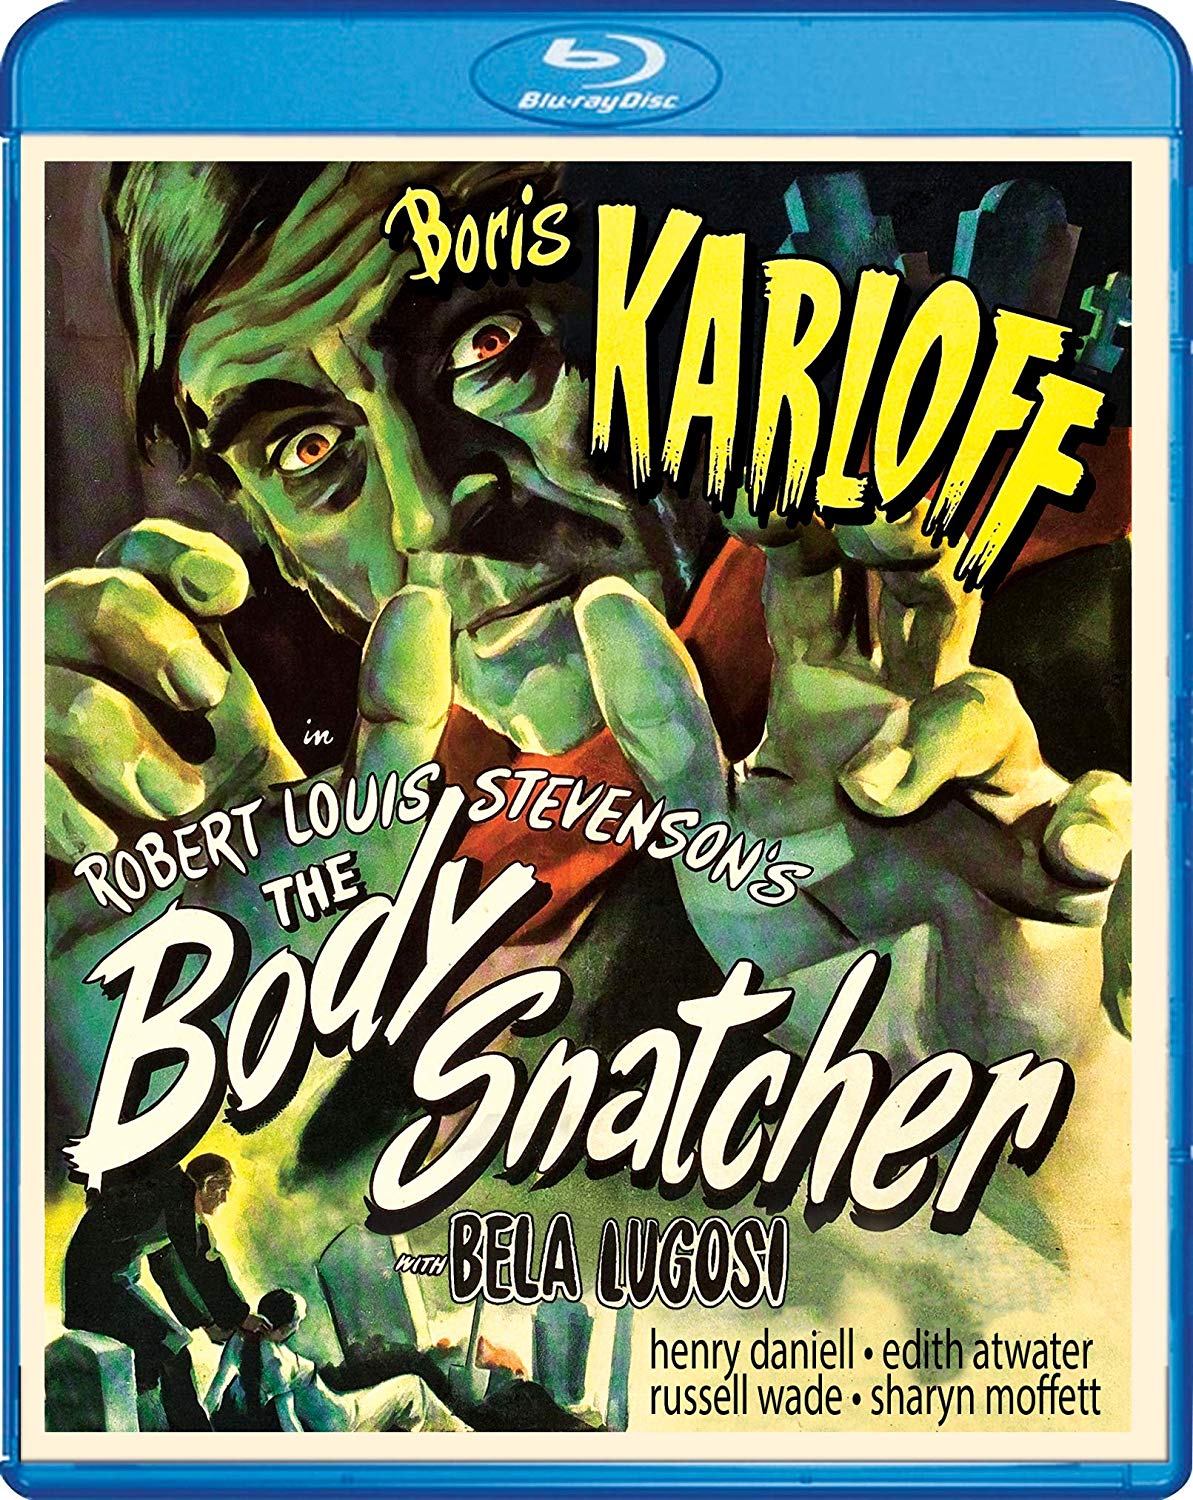 Revisión de Blu-ray: The Body Snatcher (1945)